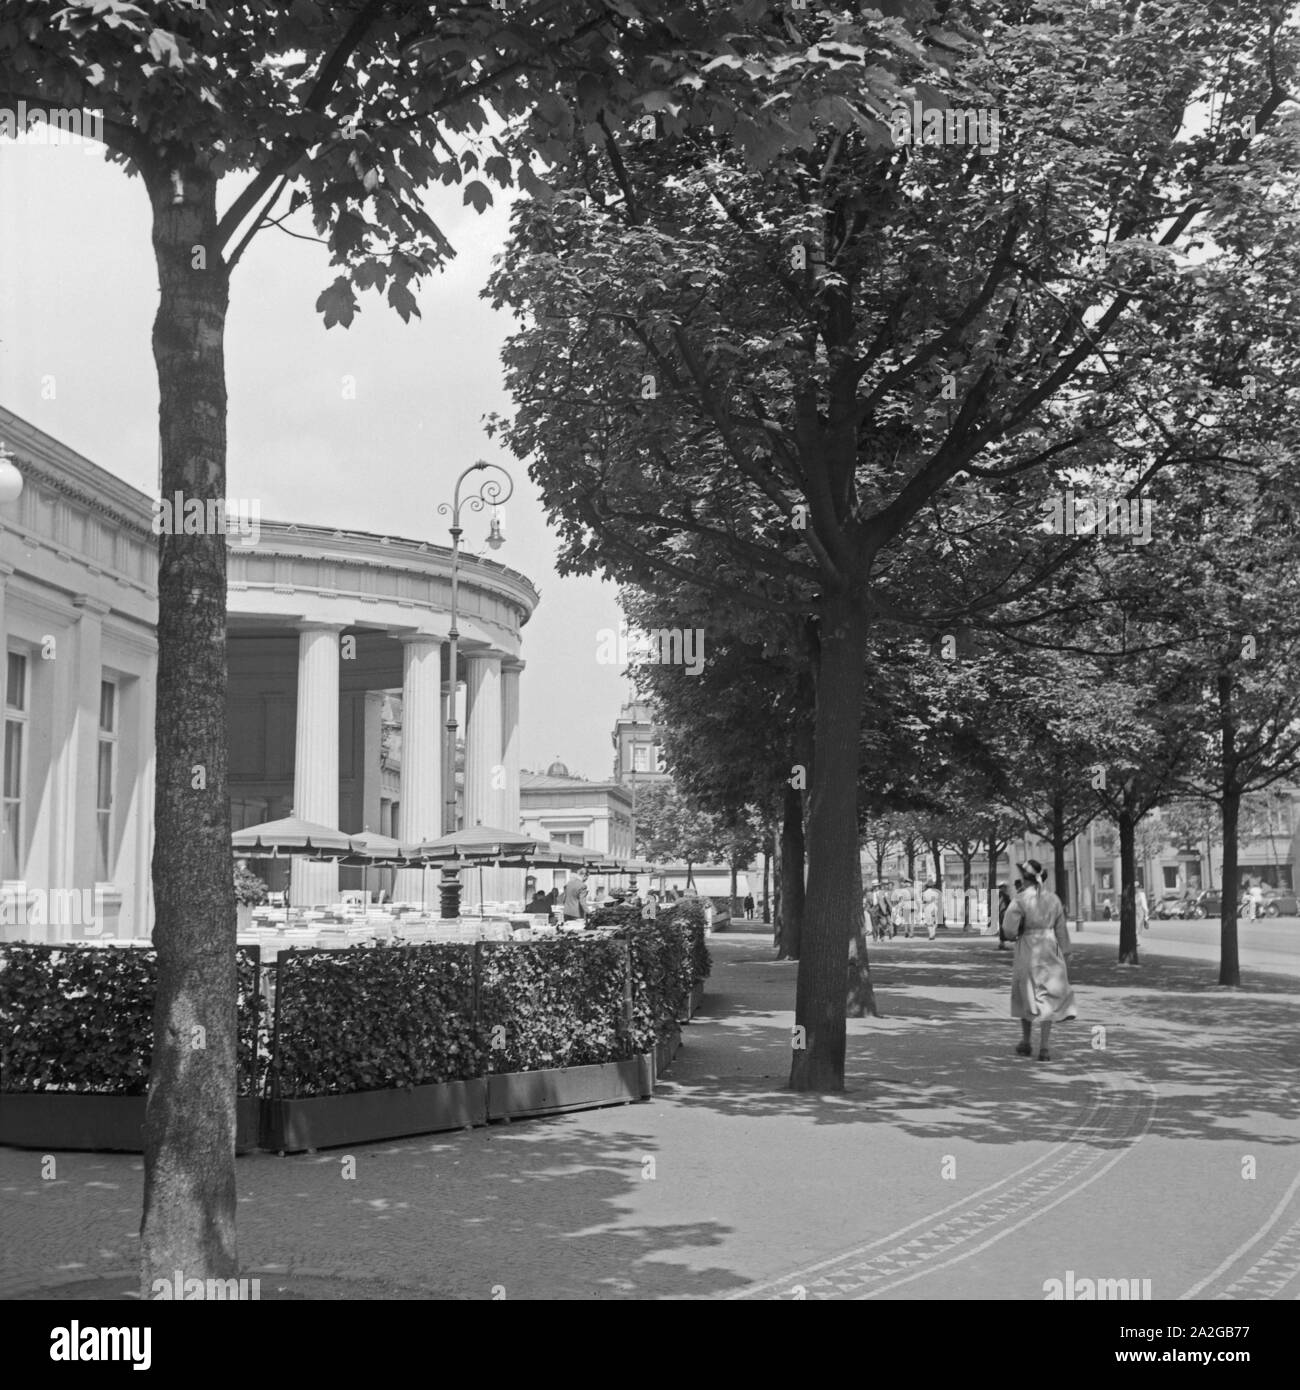 Elisenbrunnen der à Aix-la-Chapelle, Deutschland 1930 er Jahre. Spa à fontaine Elisenbrunnen Aix-la-Chapelle, Allemagne 1930. Banque D'Images